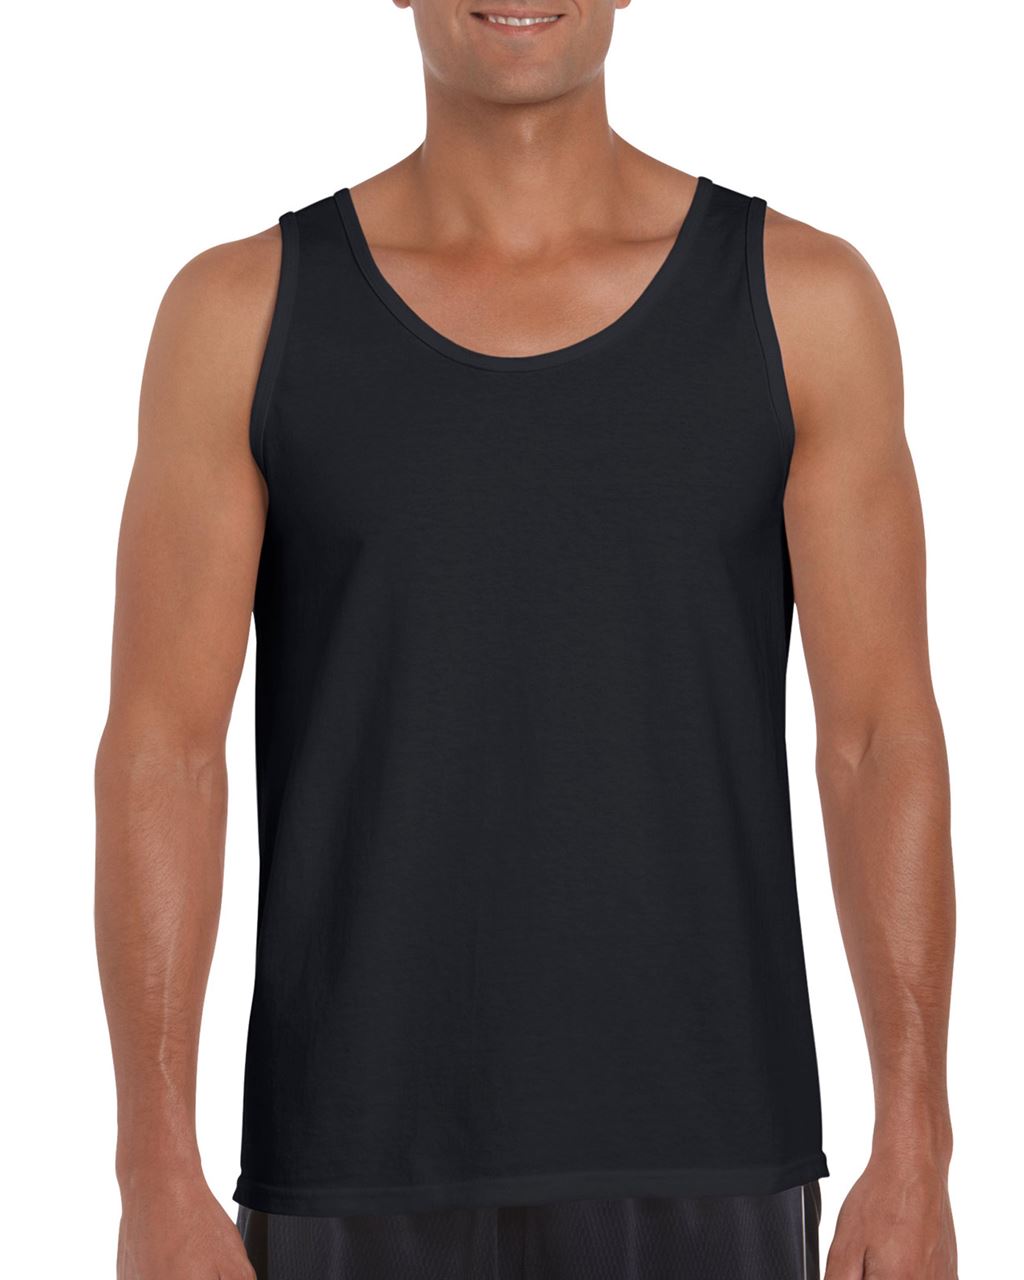 Gildan Herren Tank Top T-Shirt Muskelshirt Achselshirt Classic Basic